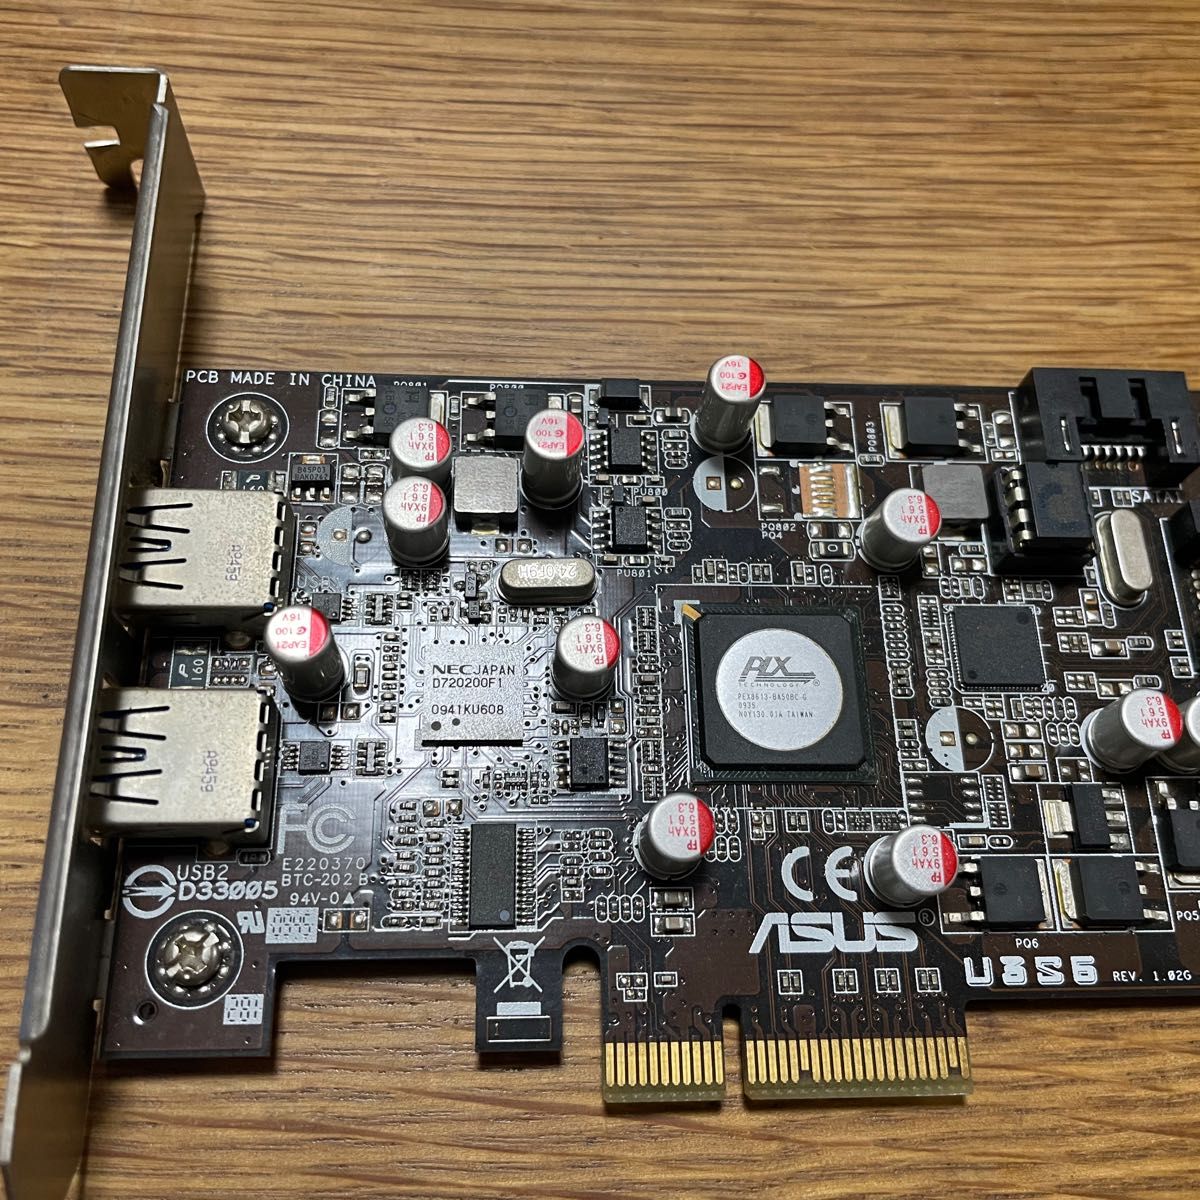 ASUS U3S6 PCI Express x4 SATA6Gb/s USB3.0増設ボード